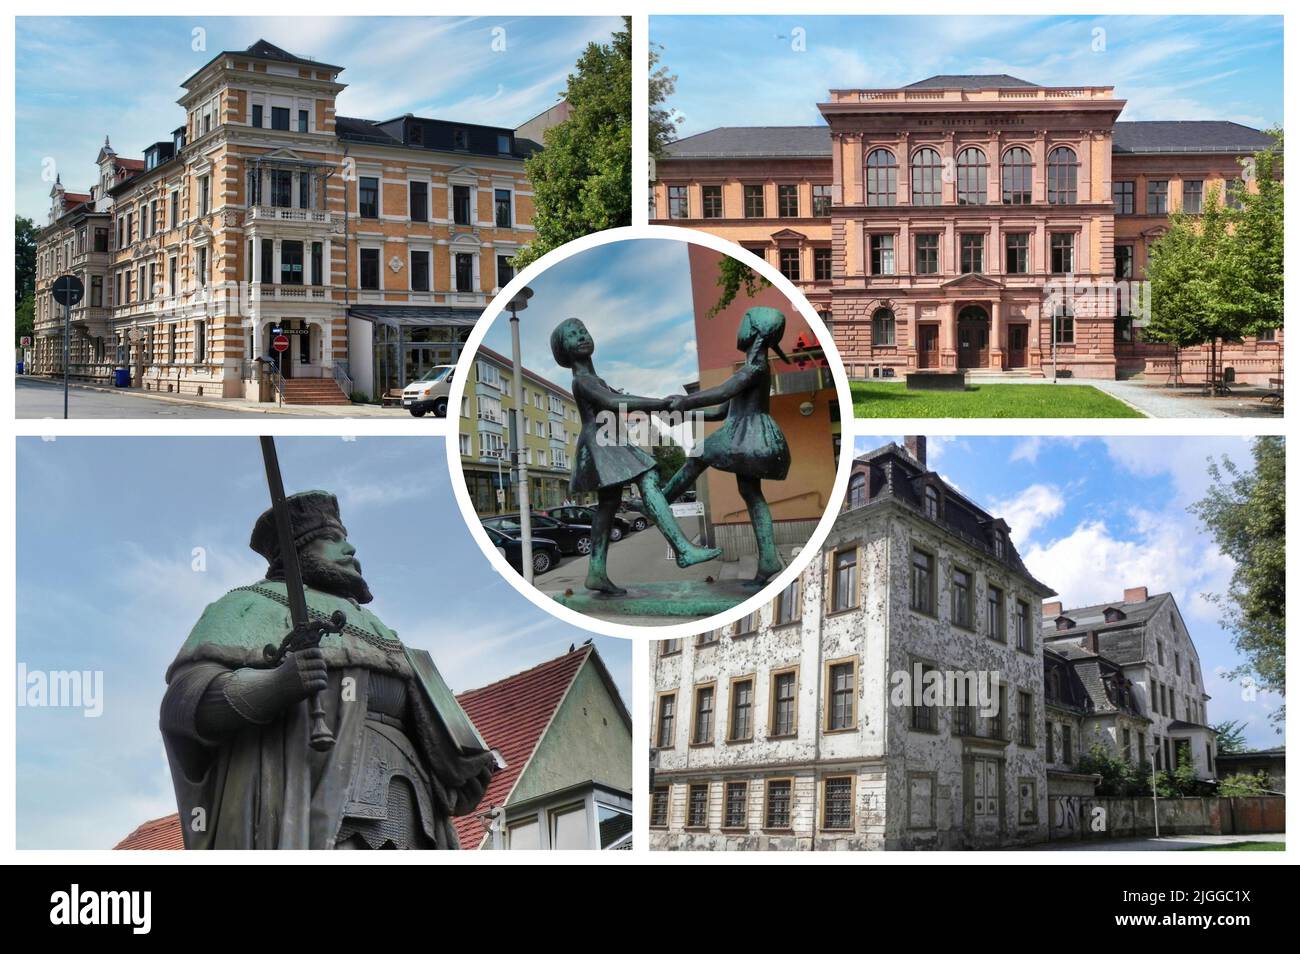 Gera ist eine Stadt in Thüringen, Deutschland. Sie ist nach der Hauptstadt Erfurt und Jena die drittgrößte Stadt des Landes. Stockfoto